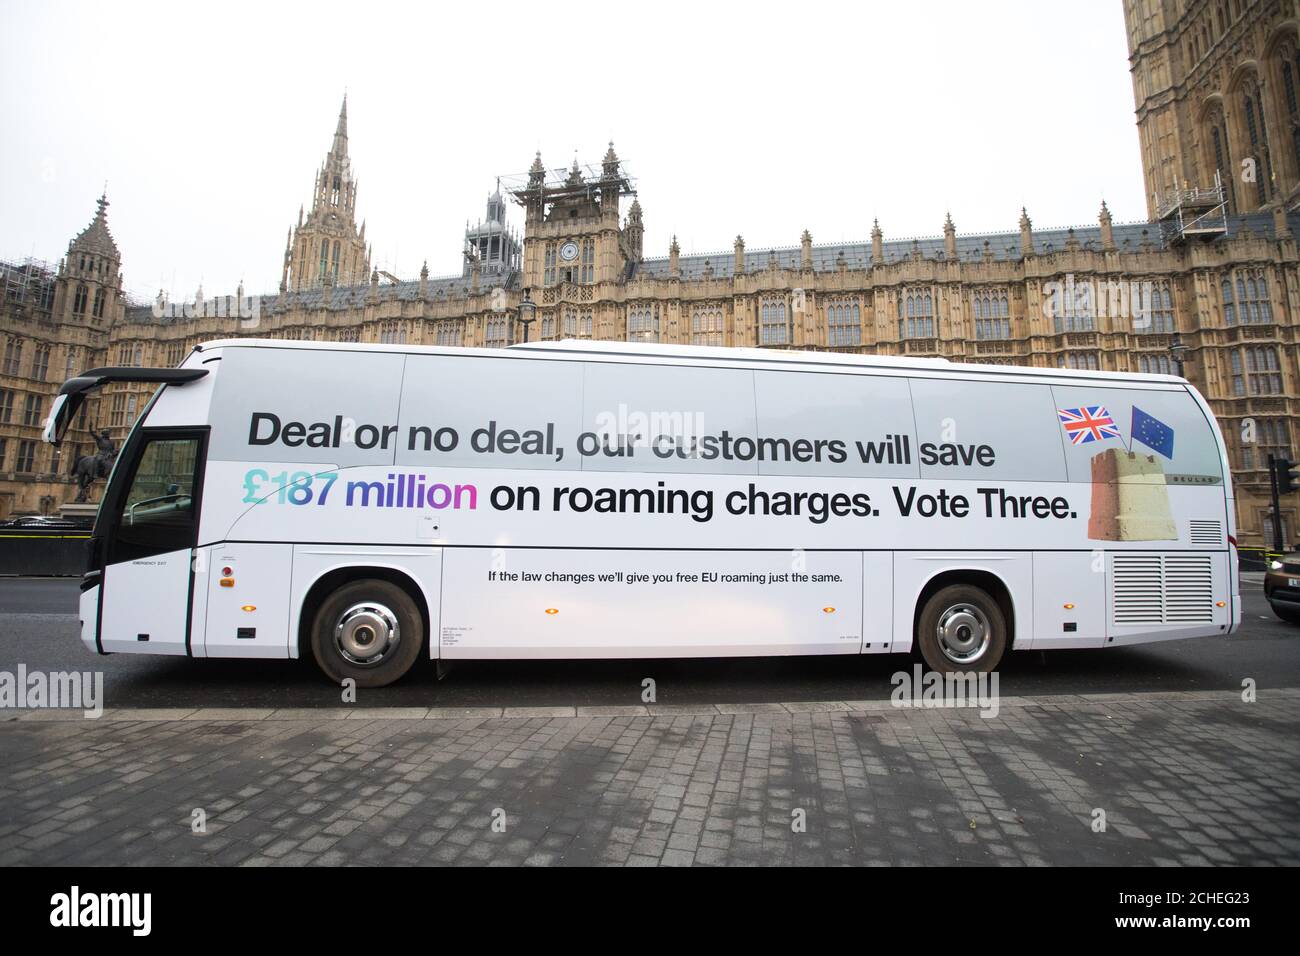 Ein Kampagnenbus, der die jüngste Zusage von Three ankündigte, seinen Kunden £187 Millionen an EU-Roaming-Gebühren nach dem Brexit zu sparen, sollte sich das Gesetz ändern, wurde heute vor den Parlamentsgebäuden entdeckt. Stockfoto